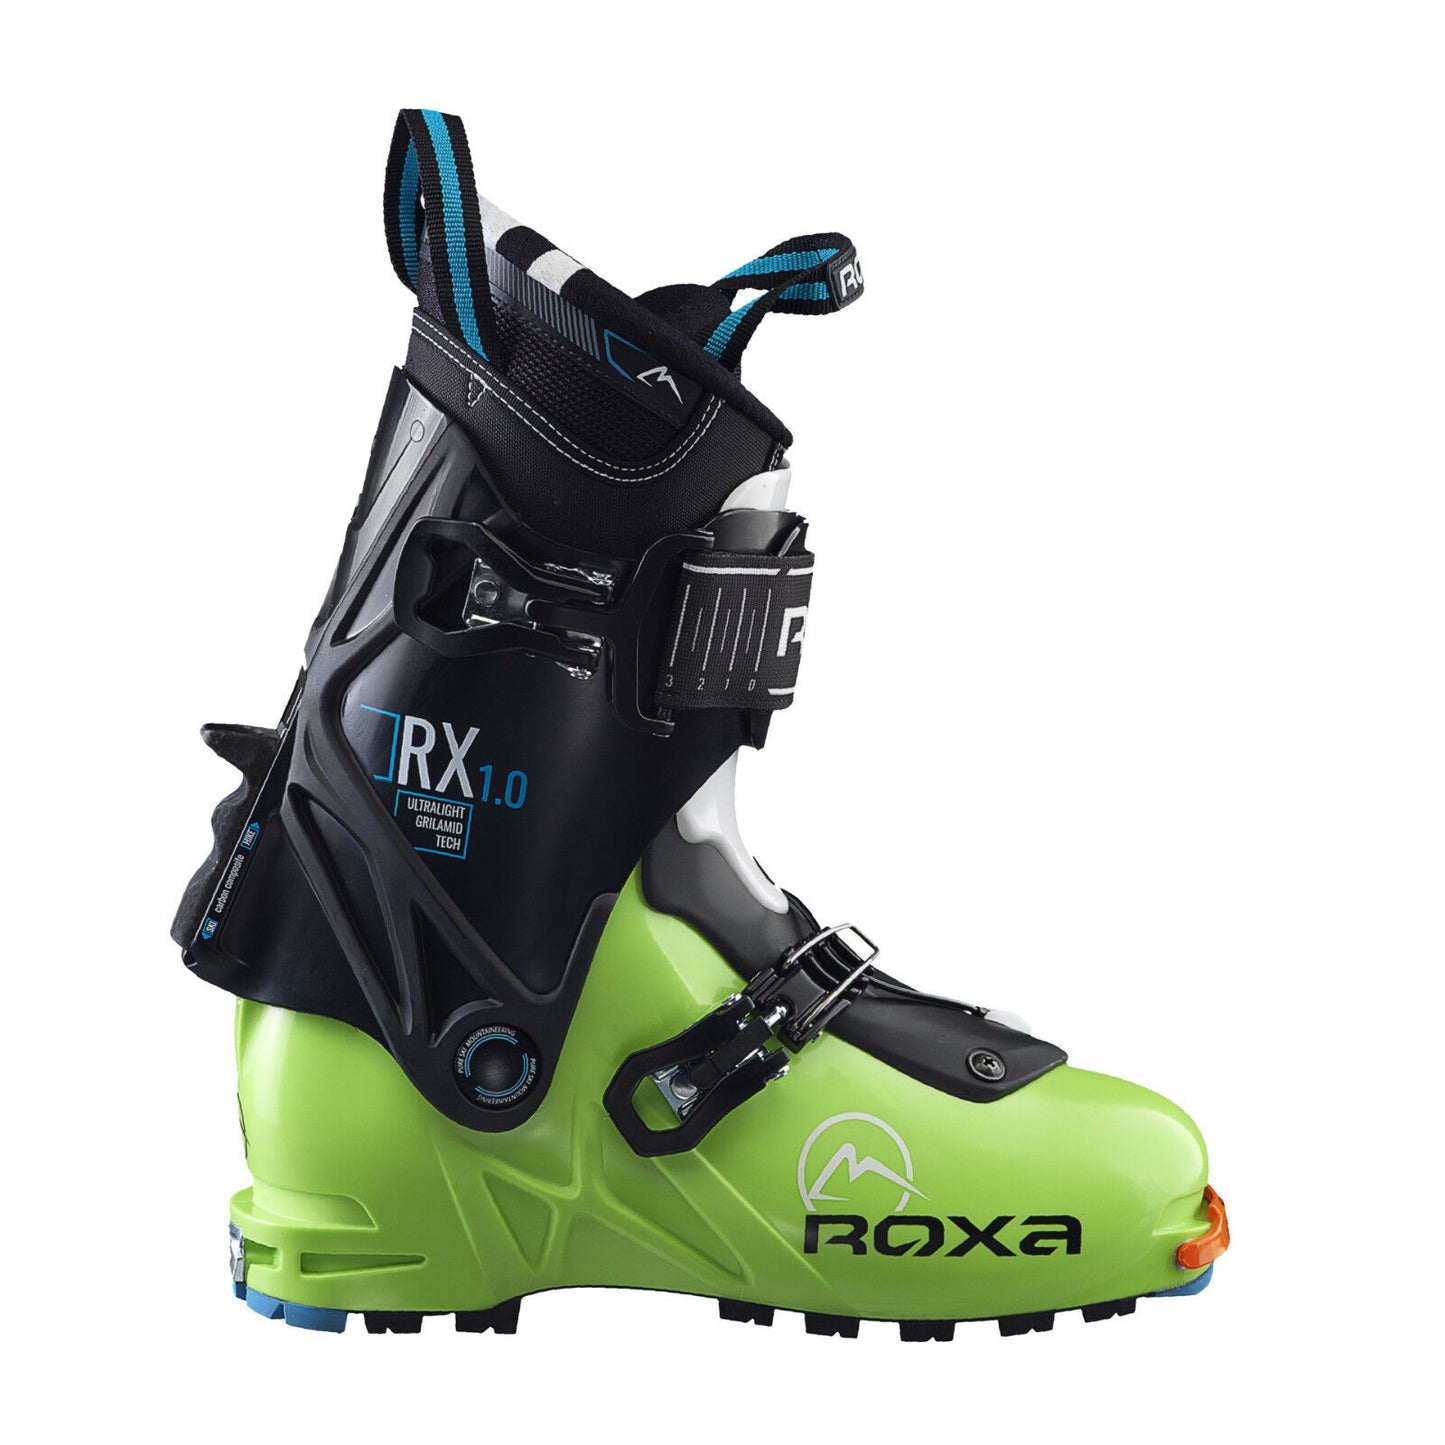 Scarponi da scialpinismo Roxa RX 1.0 ski alp boots hard flex 110 sci alpinismo